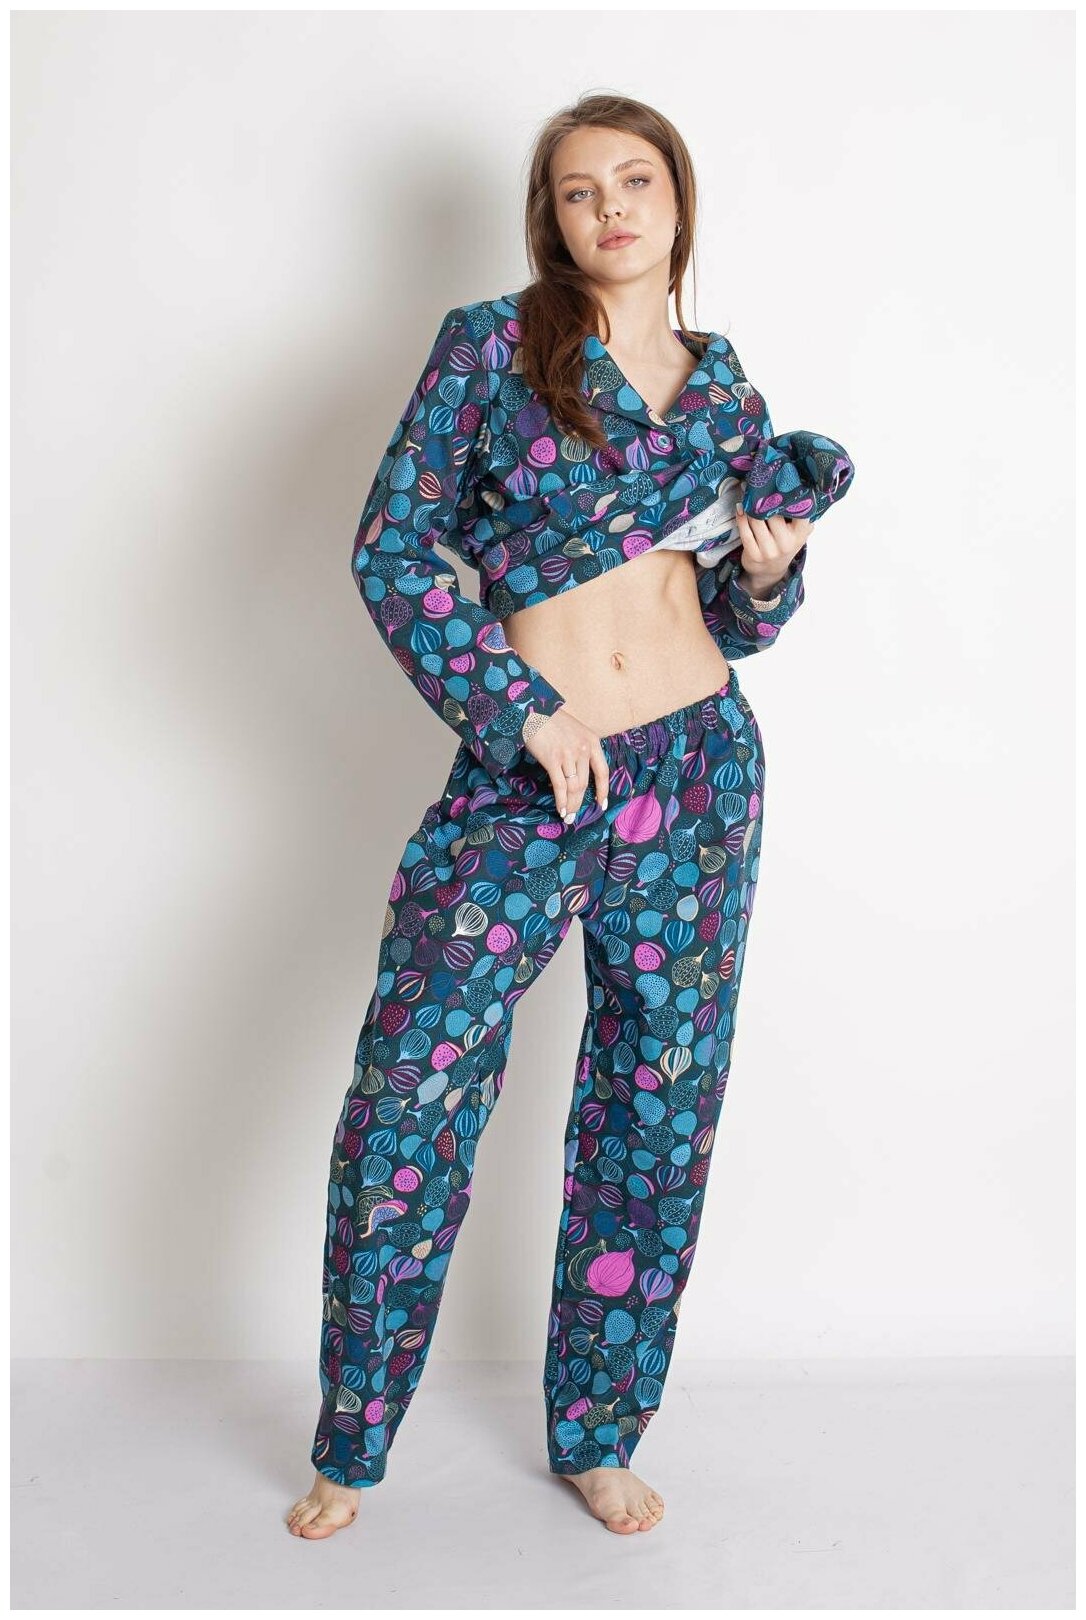 Женская пижама с брюками Серафима Изумрудный размер 54 Трикотаж Лика Дресс рубашка на 4 пуговицы с отложным воротником брюки прямого покроя с поясной - фотография № 3